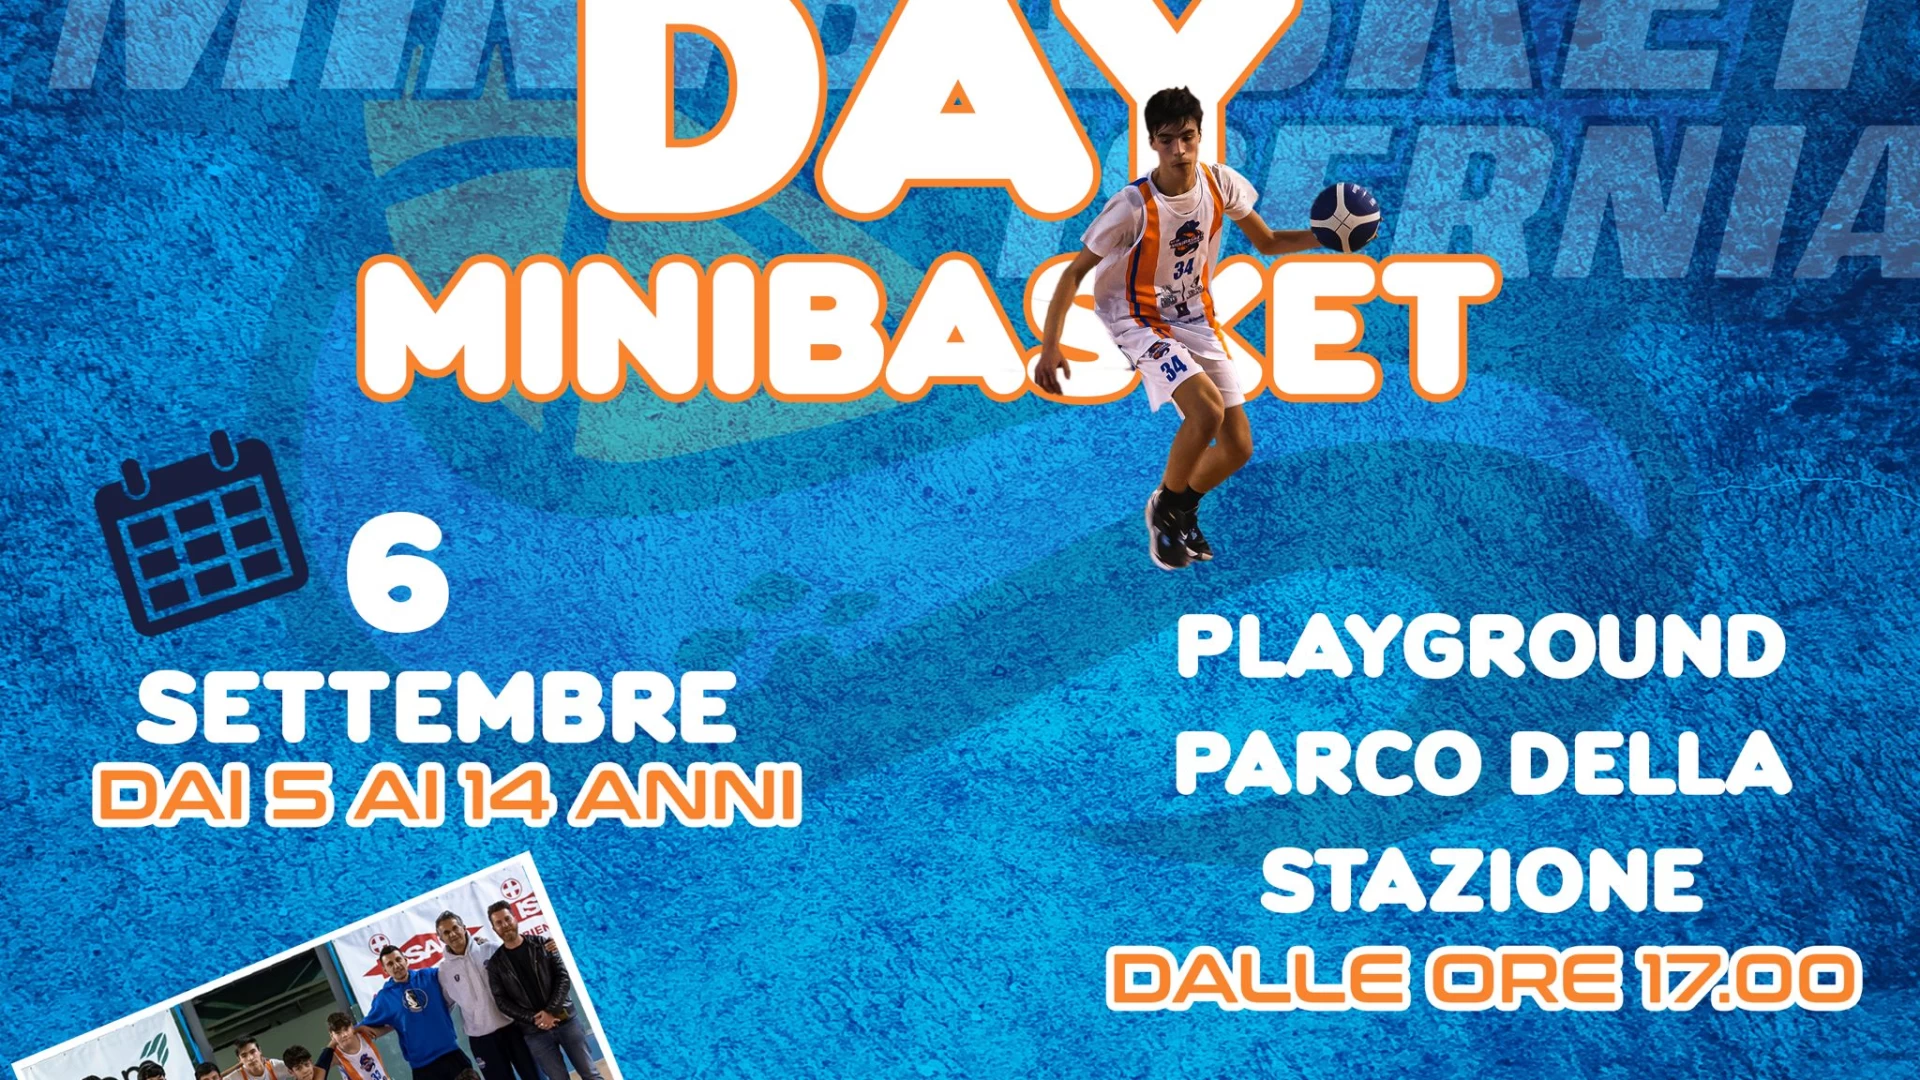 Isernia: nel pomeriggio l’Open Day di Mini-Basket promosso ed organizzato dall’associazione sportiva “New Minibasket”. Appuntamento al Parco della Stazione.